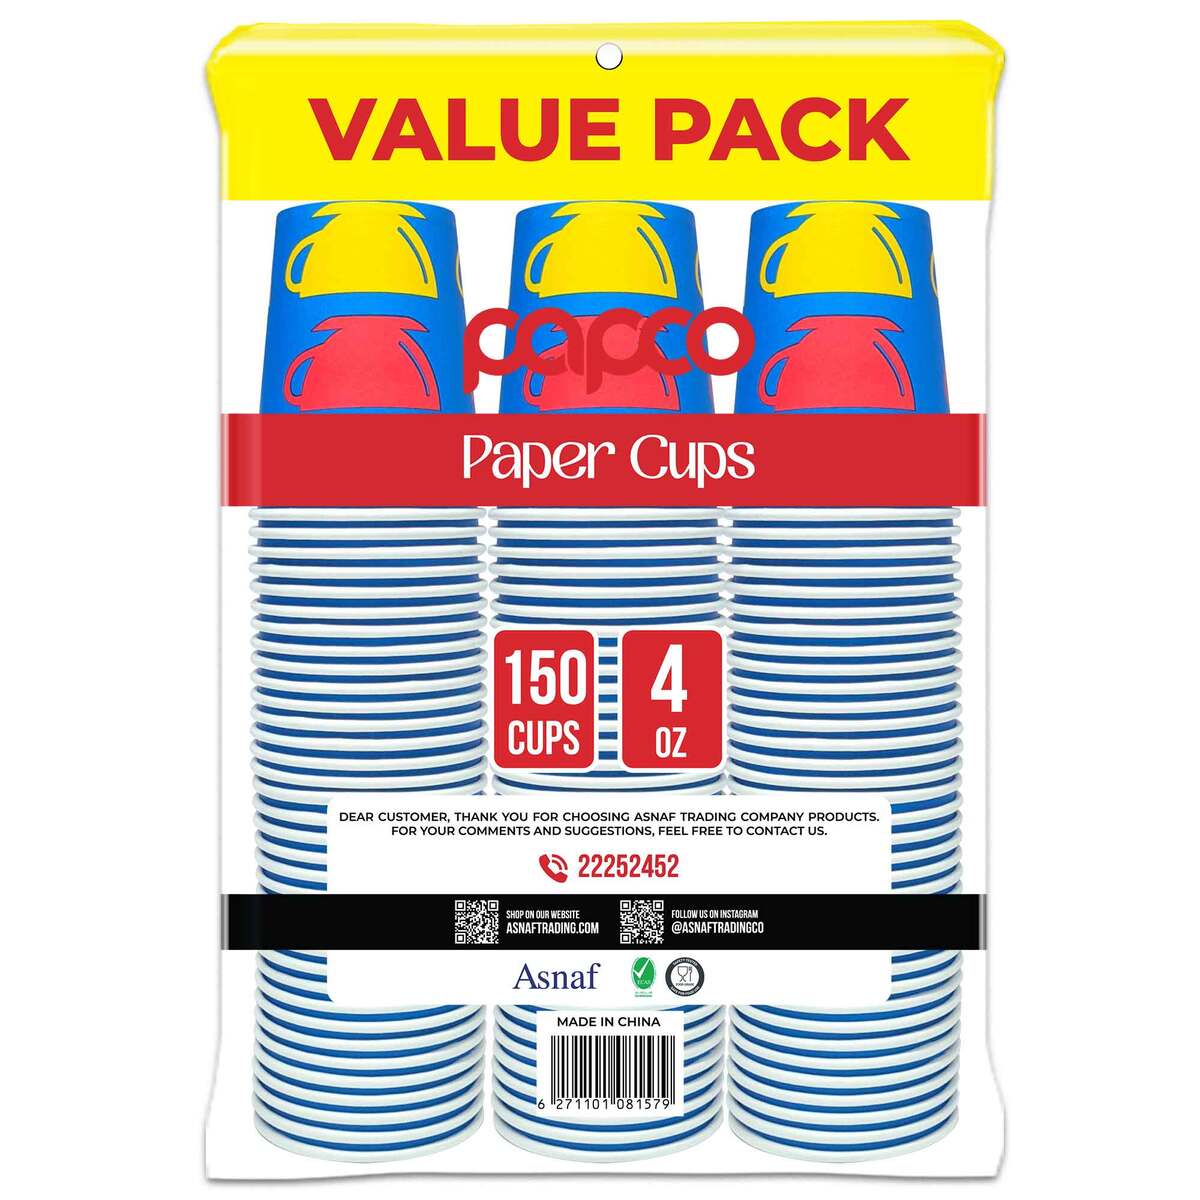 Papco Paper Cups 4oz Value Pack 3 x 50 pcs